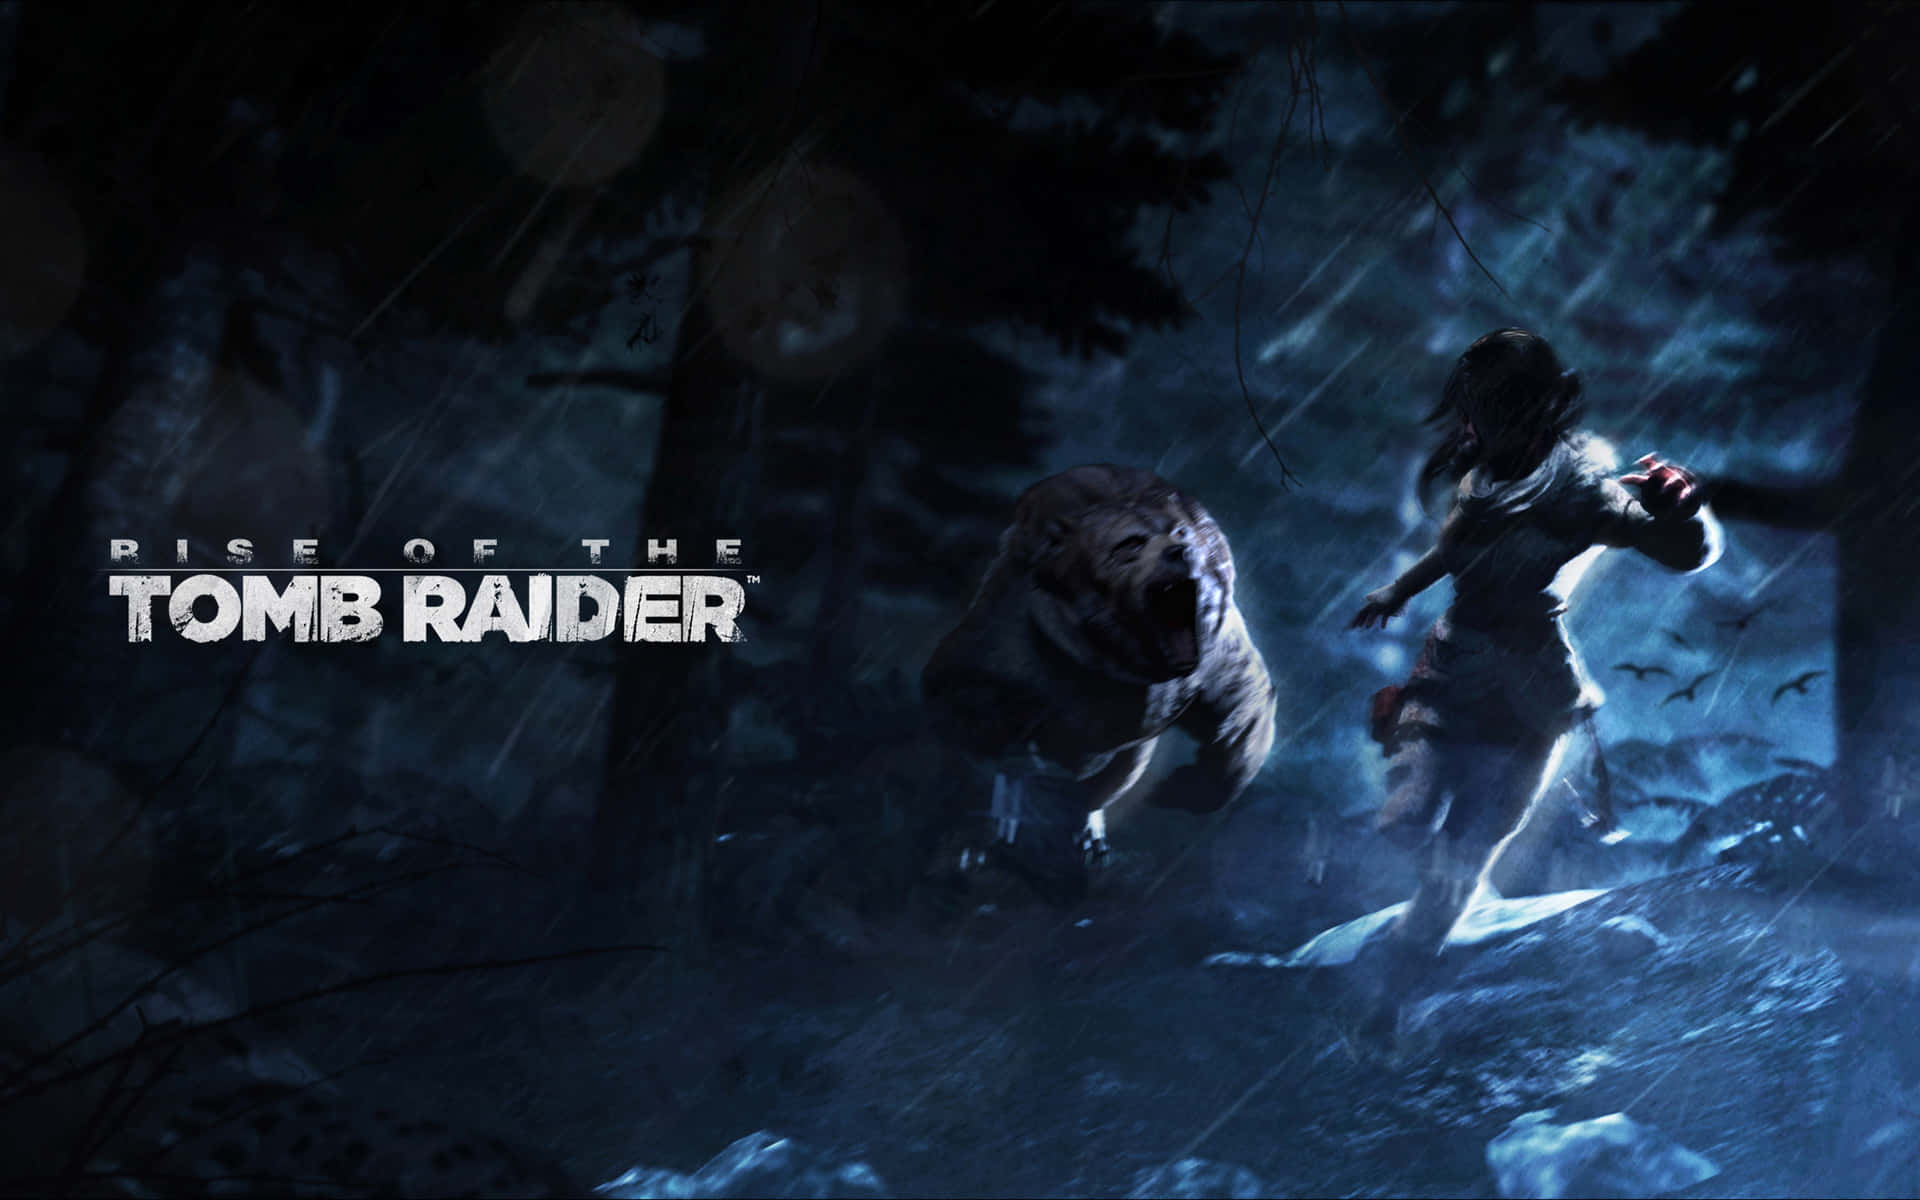 Laracroft Tager Sig Modigt Gennem Iskolde Dybder I Rise Of The Tomb Raider.